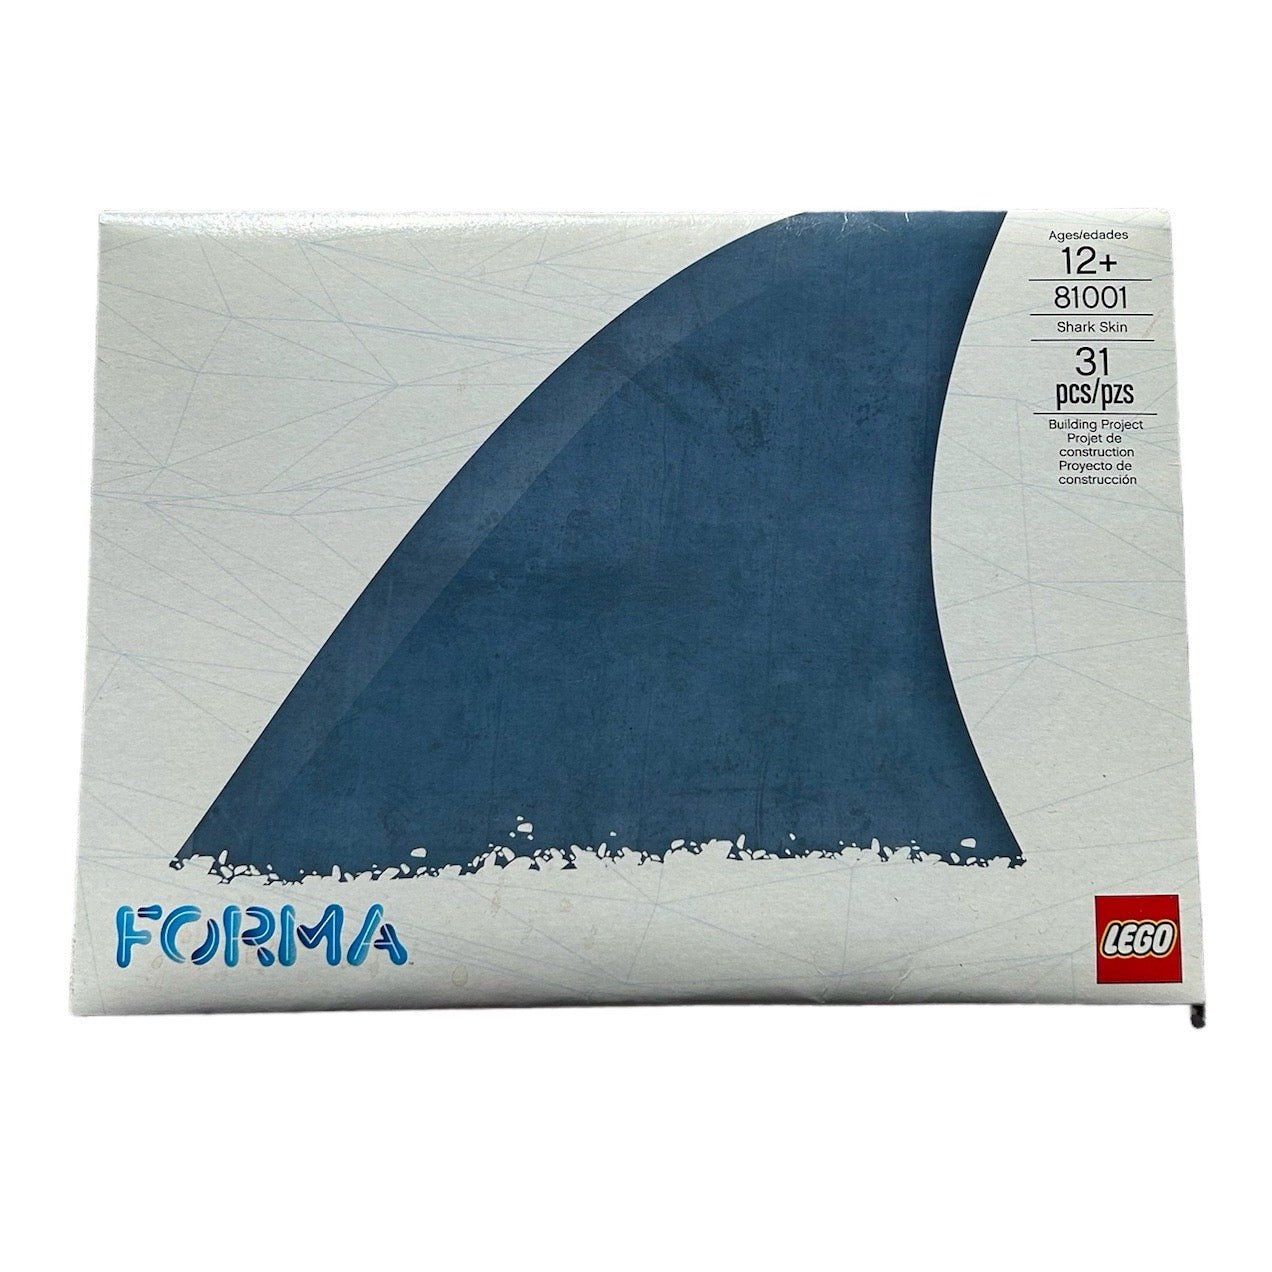 LEGO Forma Shark Skin (81001)